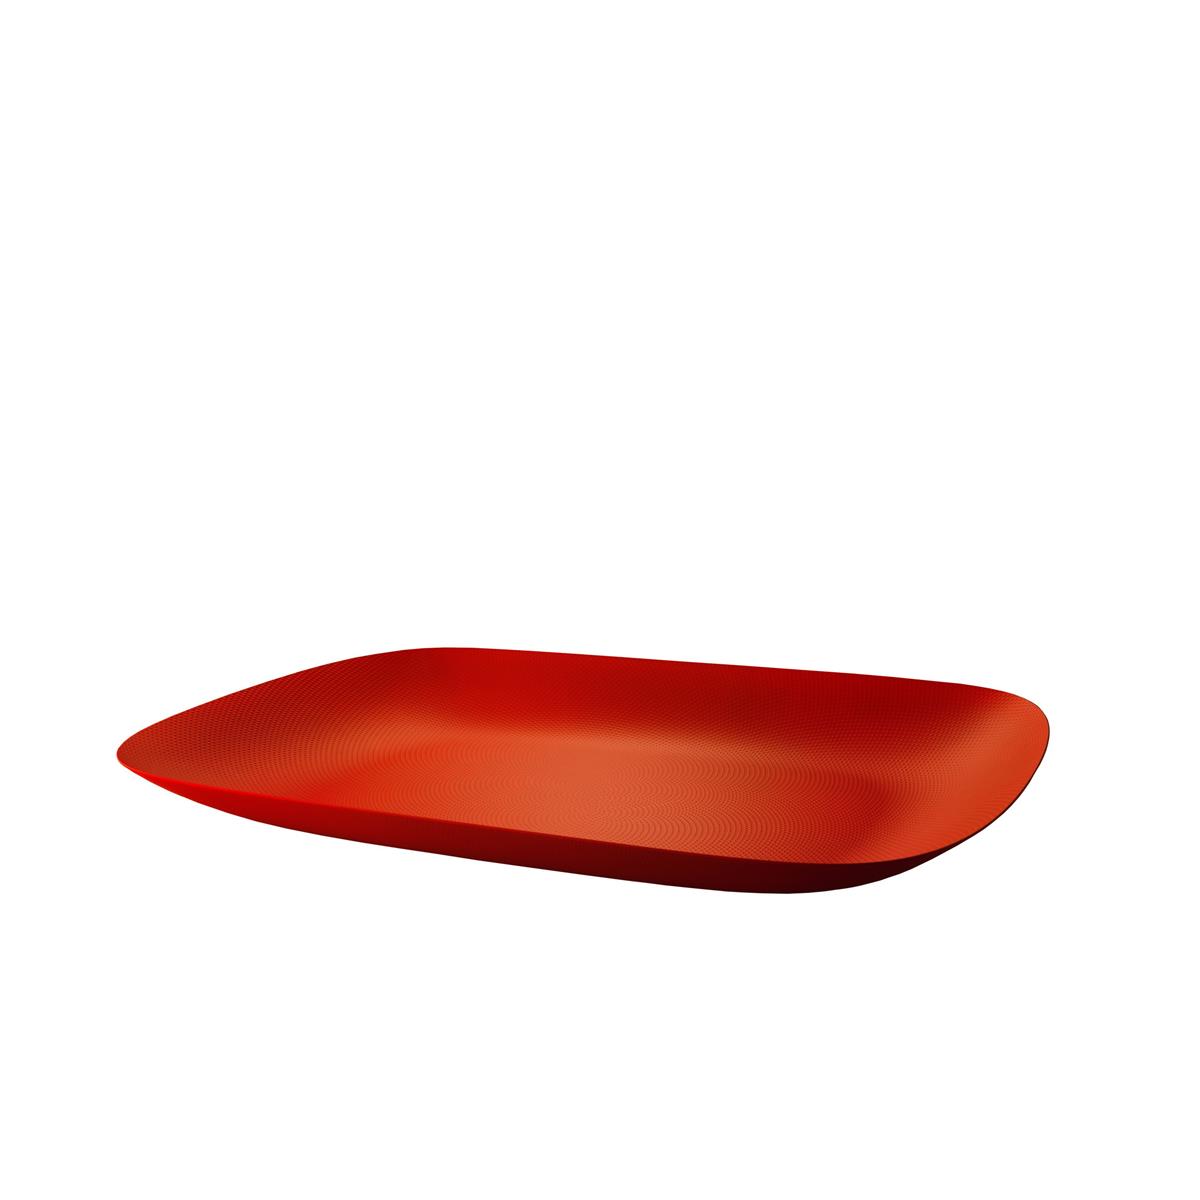 Alessi-Moiré Vassoio rettangolare in acciaio colorato e resina, rosso